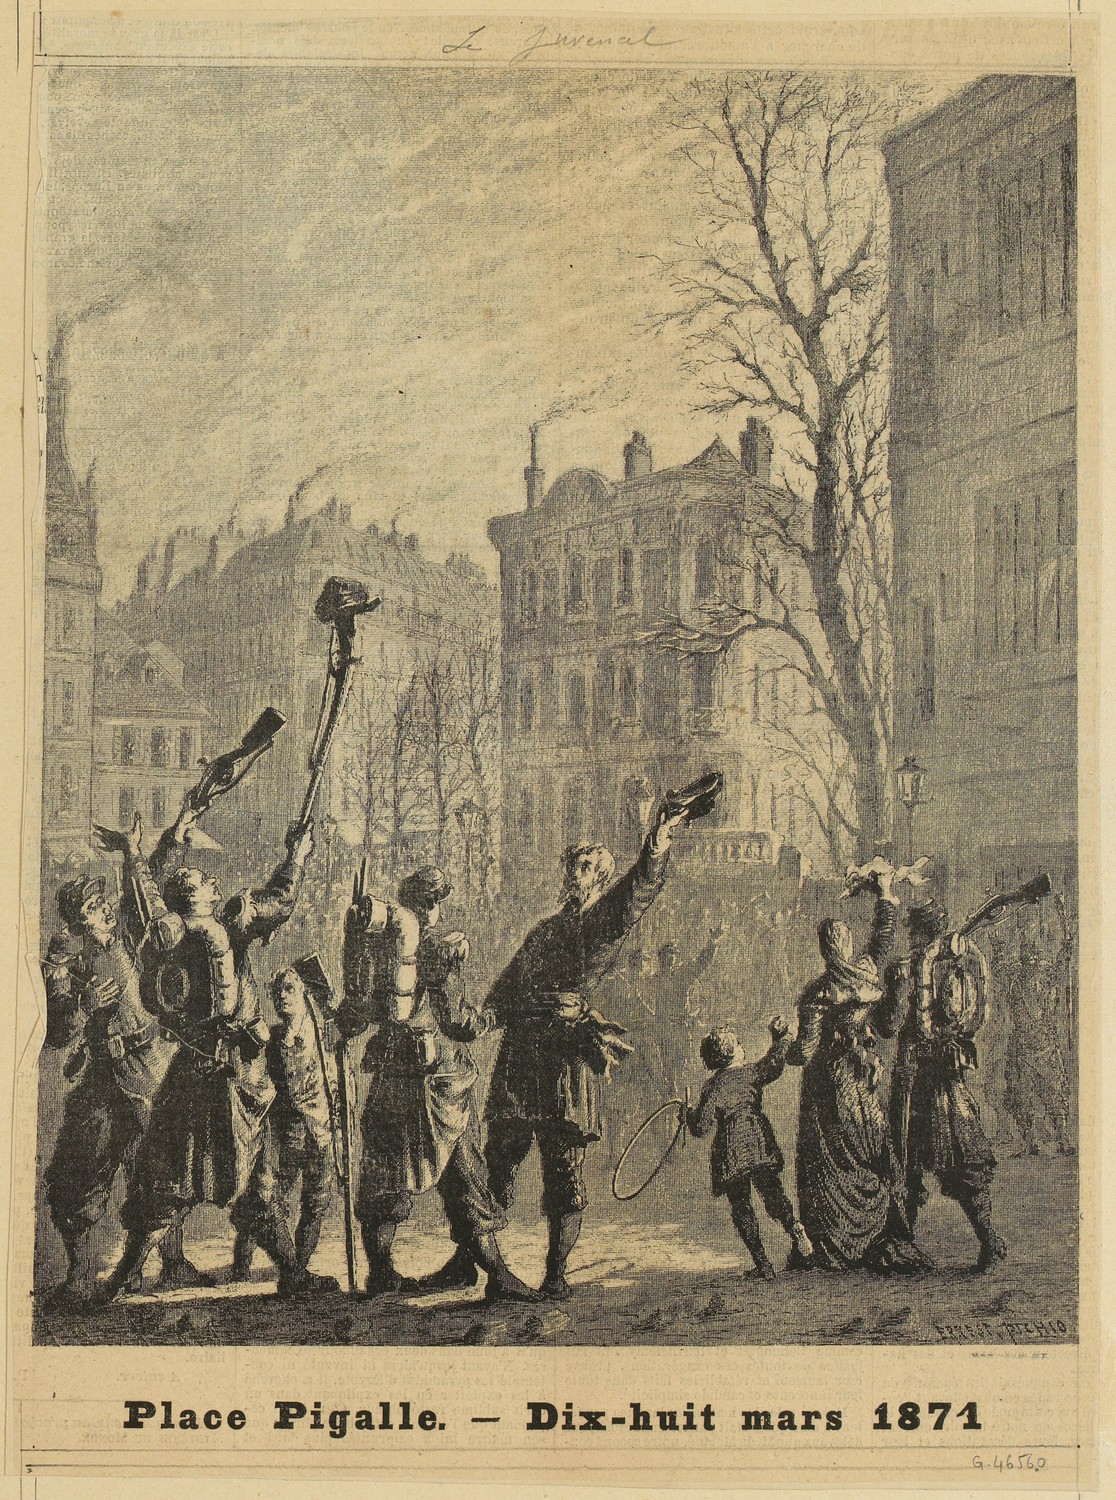 Place Pigalle. - Dix-huit mars 1871 gravure d'après dessin de Ernest Pichio (CC0 Paris Musées / Musée Carnavalet - Histoire de Paris)